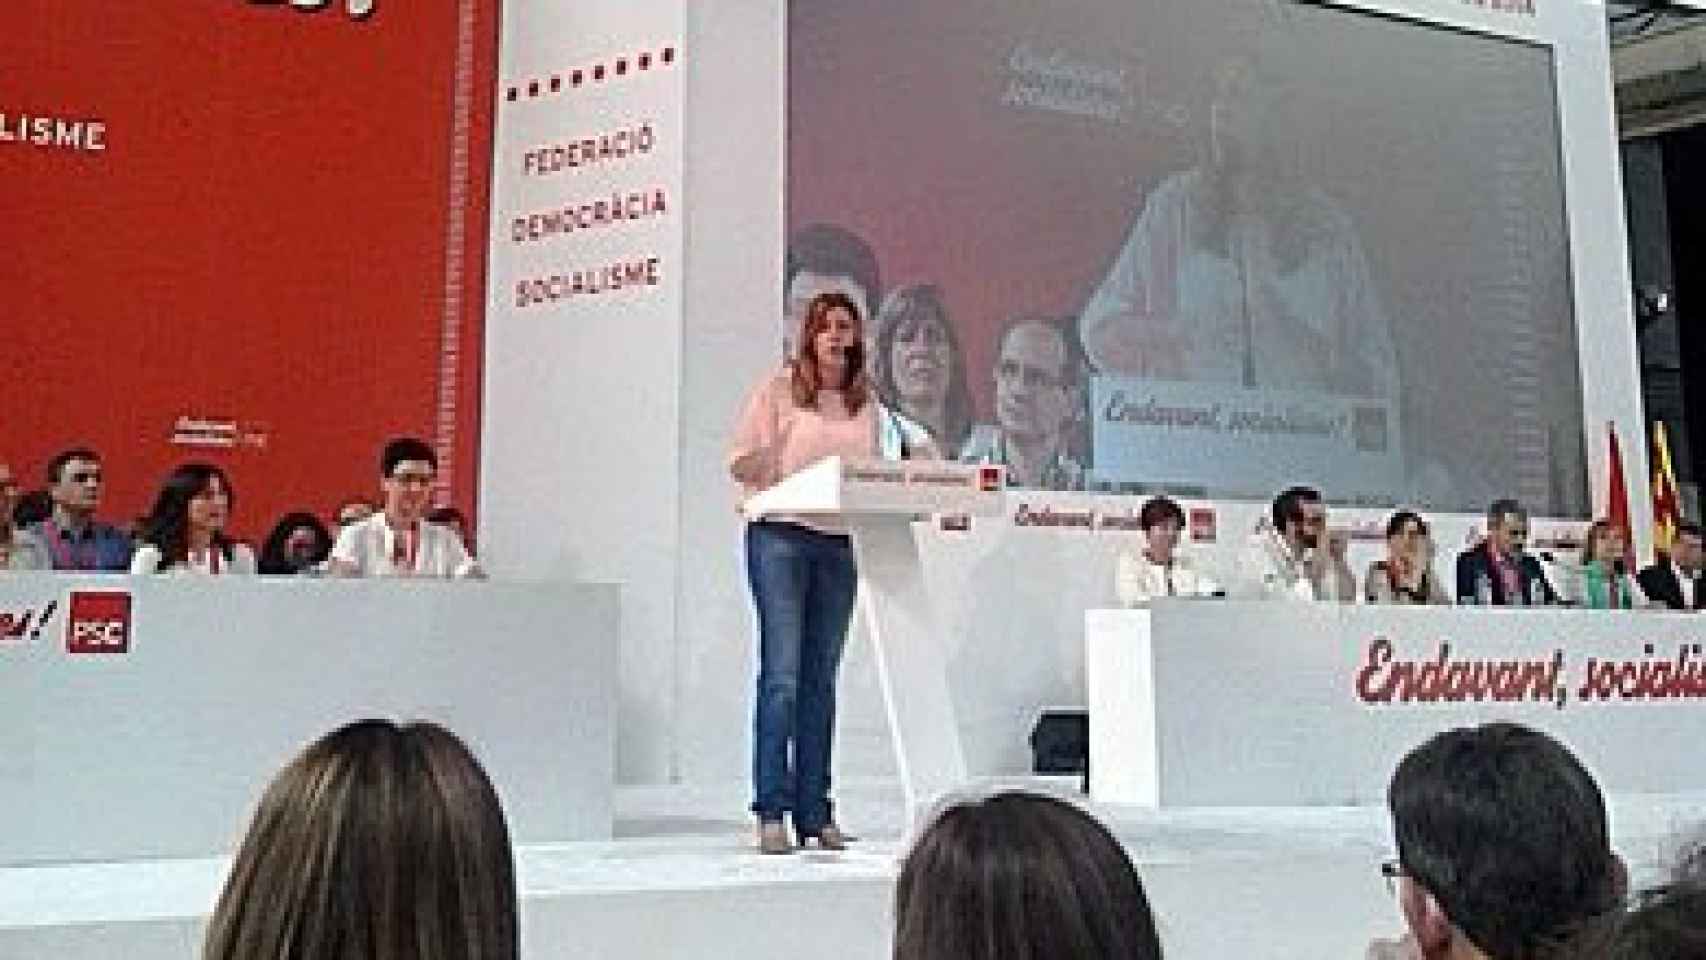 La presidenta de la Junta de Andalucía, Susana Díaz, durante su intervención en el Congreso Extraordinario del PSC